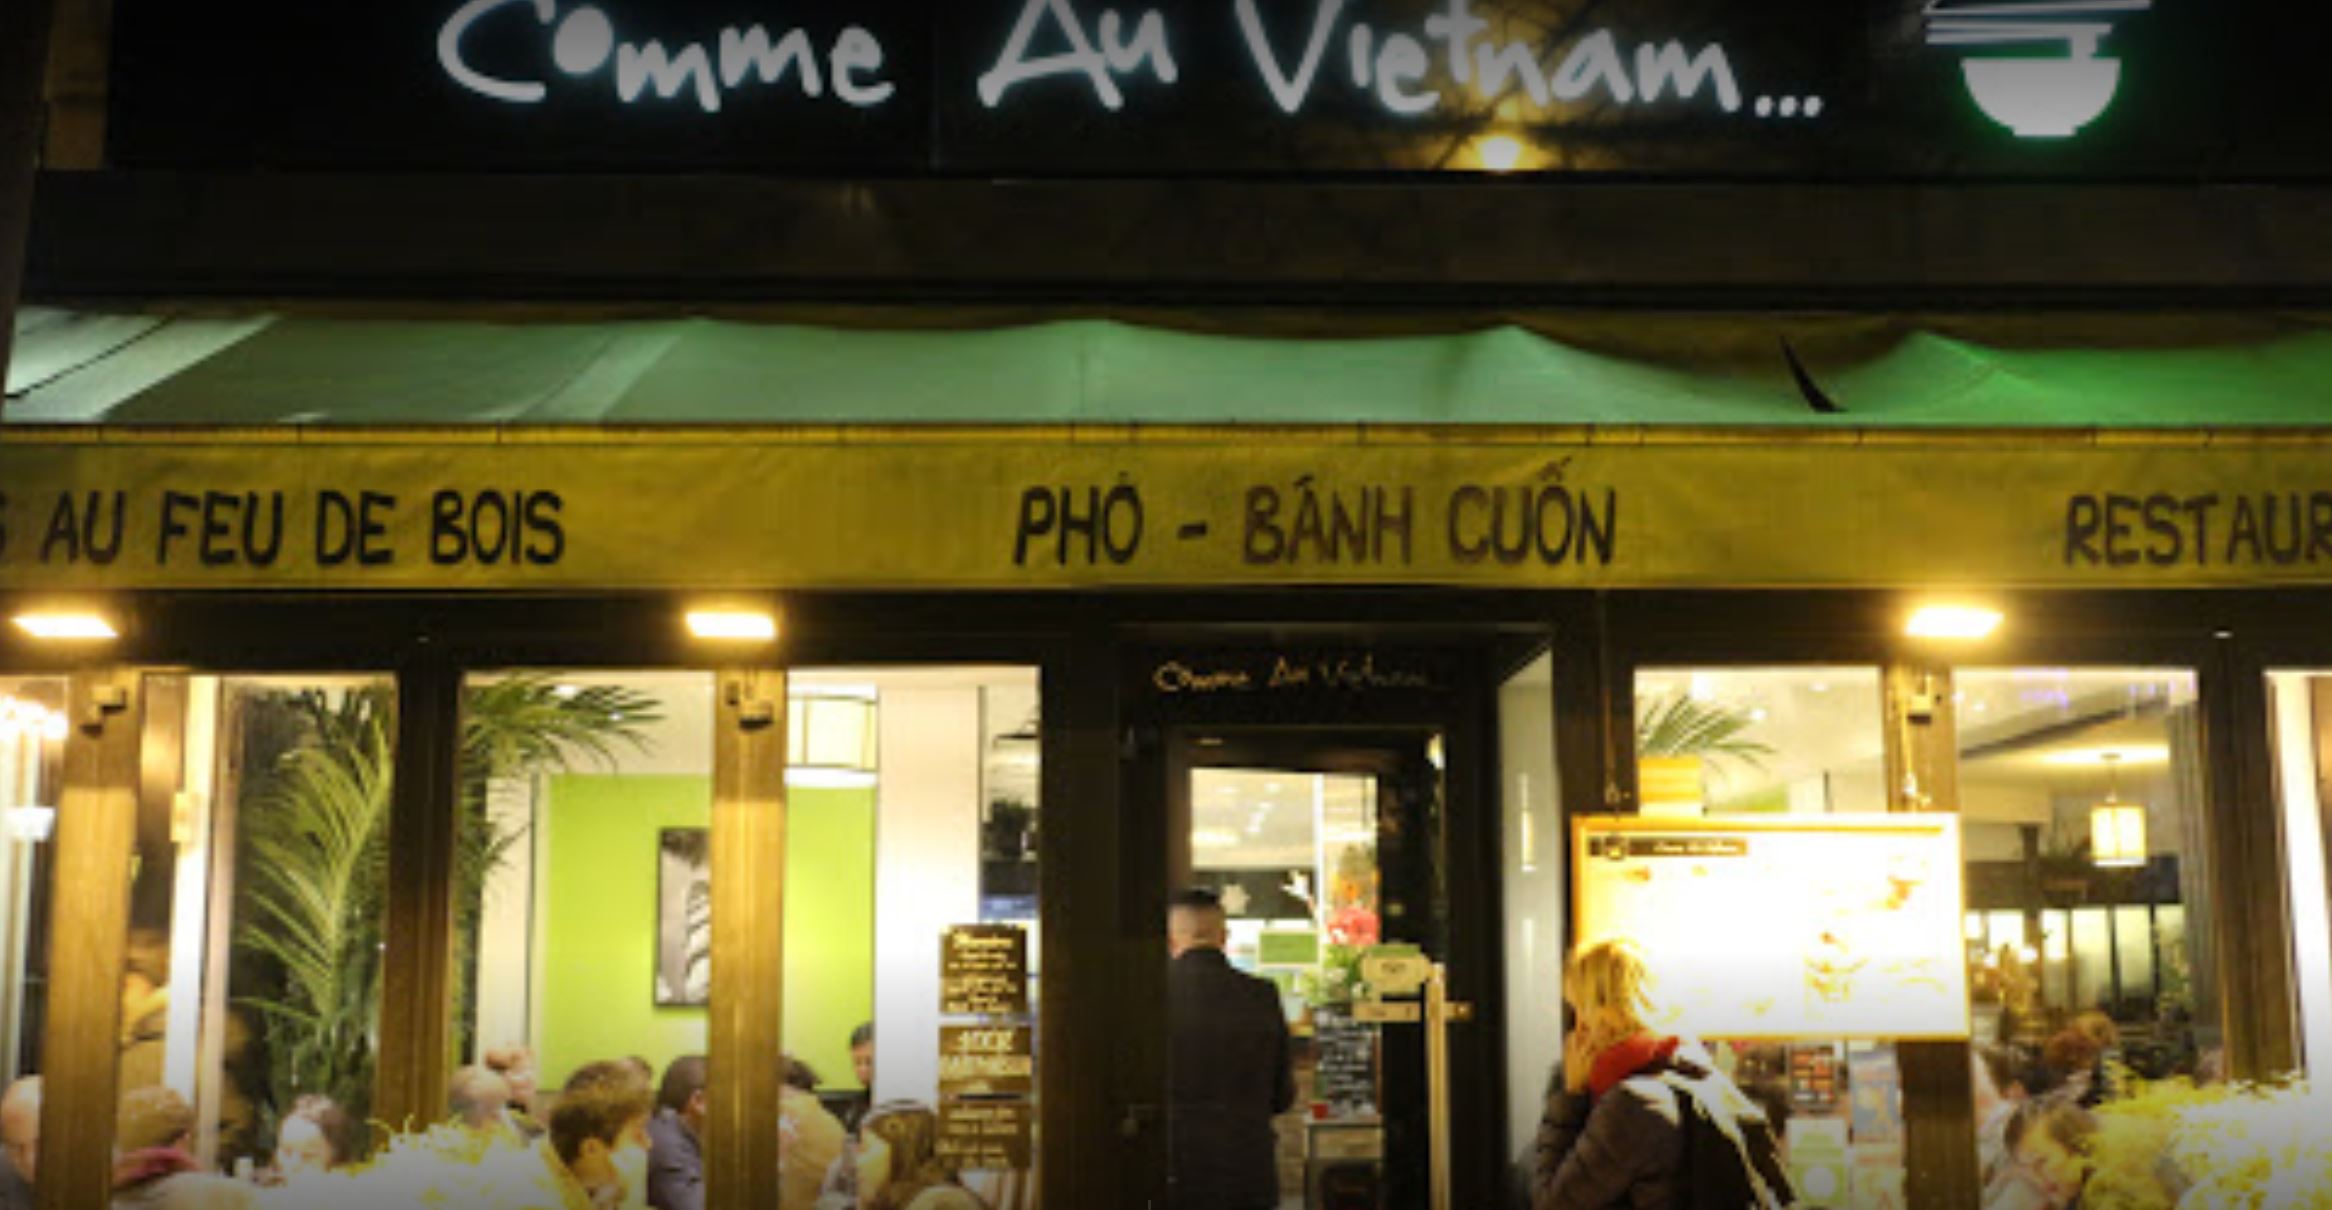 Le restaurant Comme au Vietnam